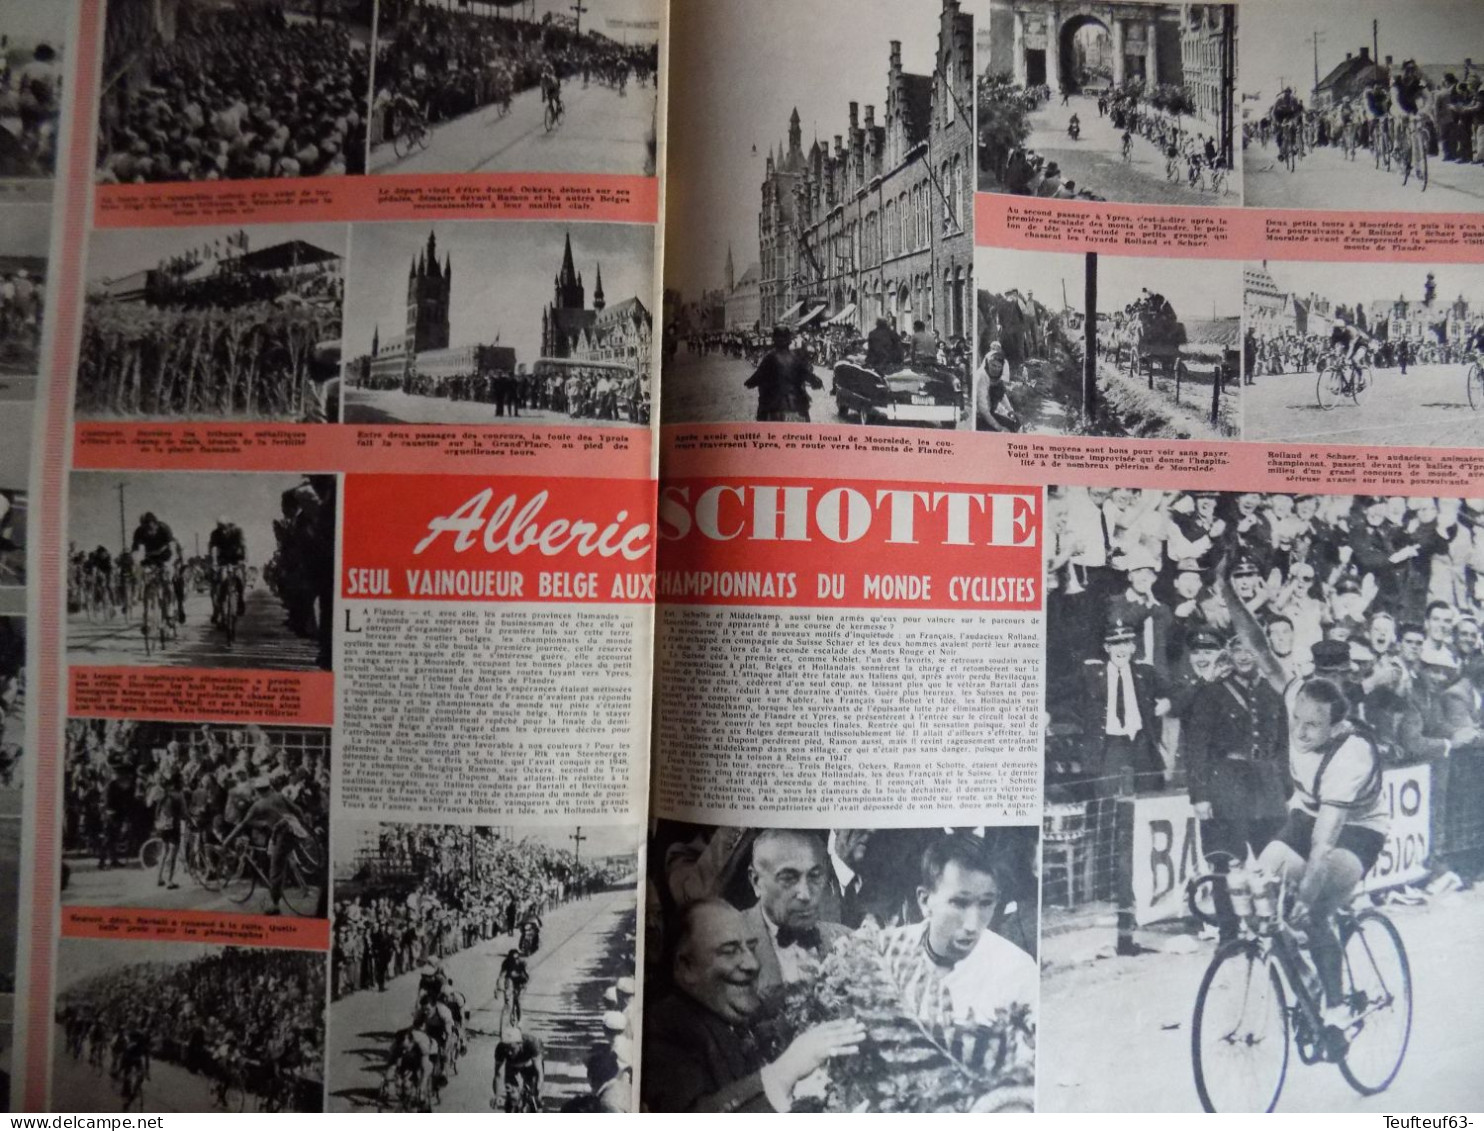 Le Soir Illustré N° 948 Mariage Au Luxembourg - Richard Todd - Cyclisme Alberic Schotte - Docteur Chenevée Homme-triton - Informations Générales